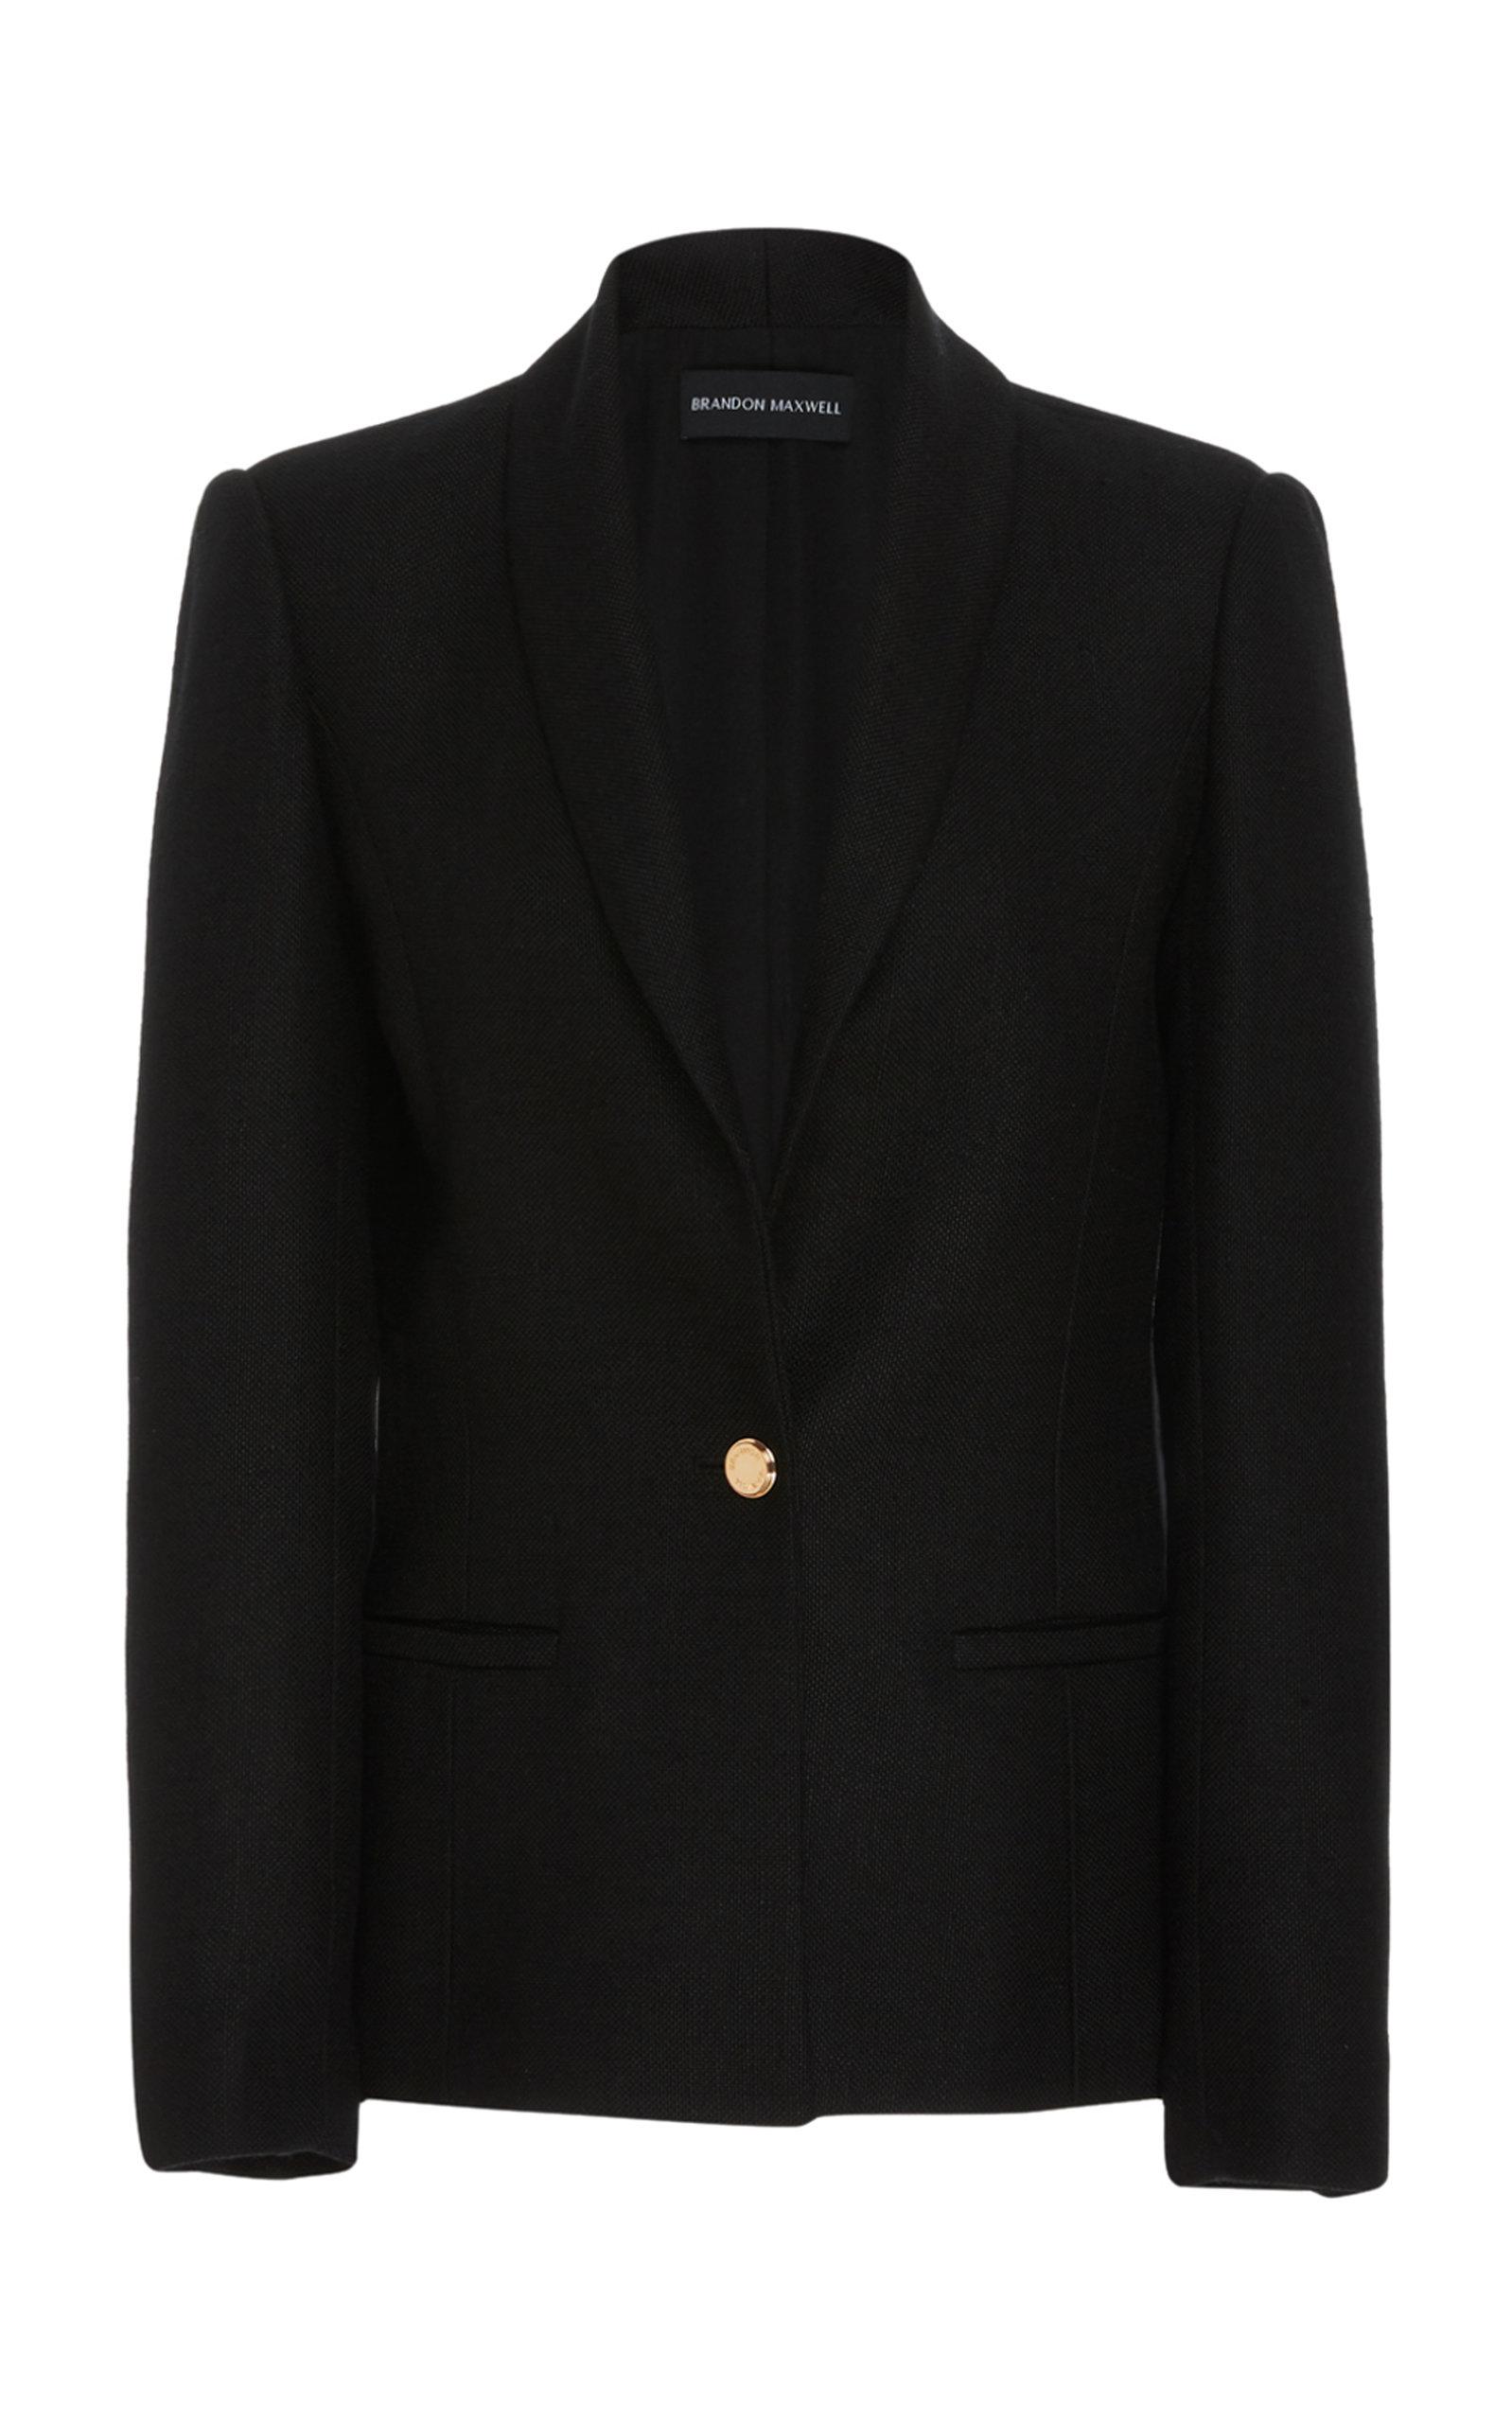 Brandon Maxwell Button-detailed Twill Blazer Jacket in Black - Lyst